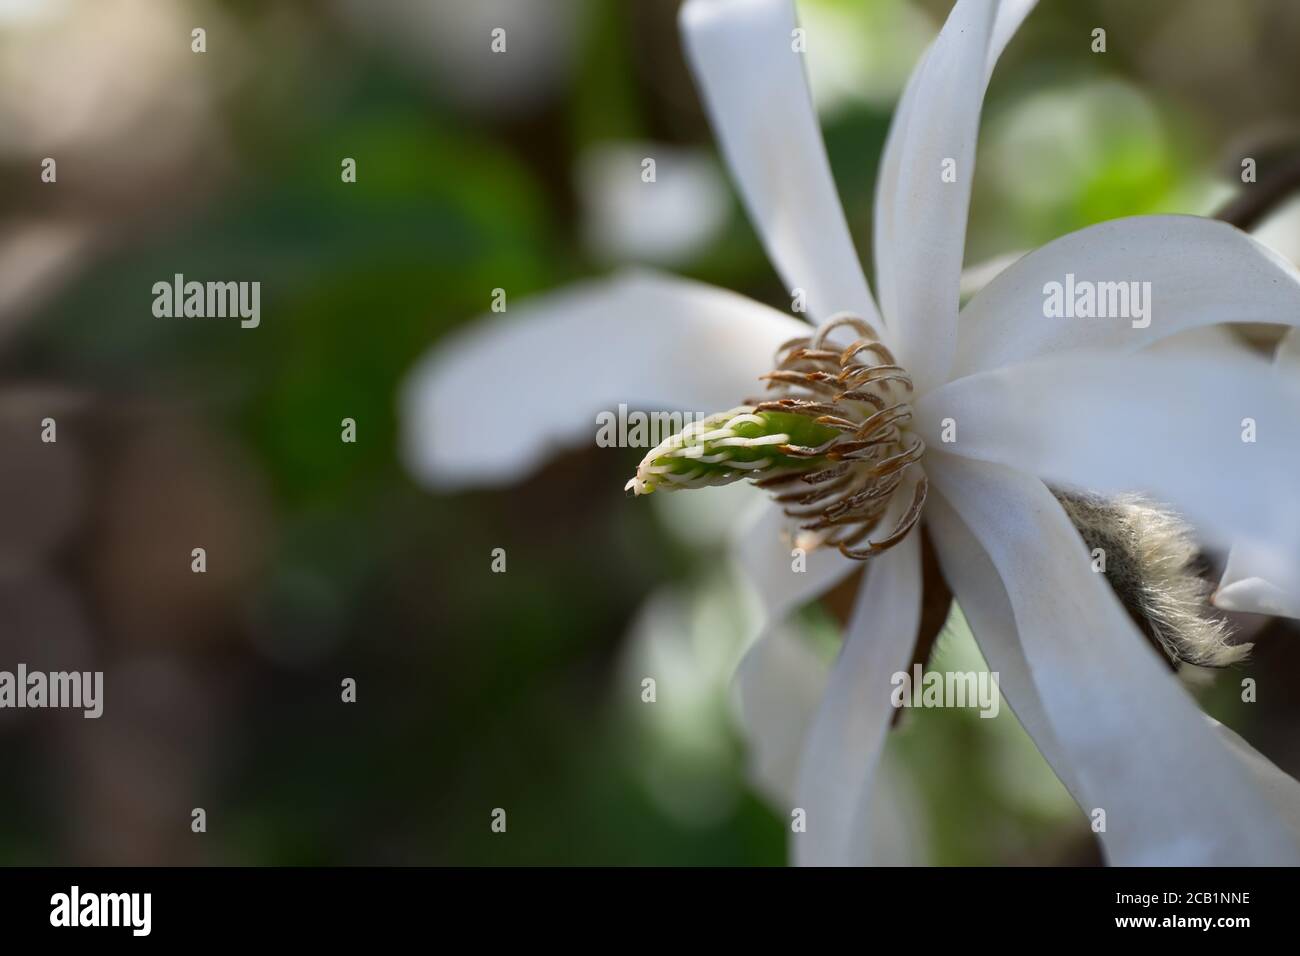 Fleur de magnolia blanc, concentrez-vous sur les étamines et le bourgeon derrière le pétale en bas à droite. Arrière-plan flou Banque D'Images